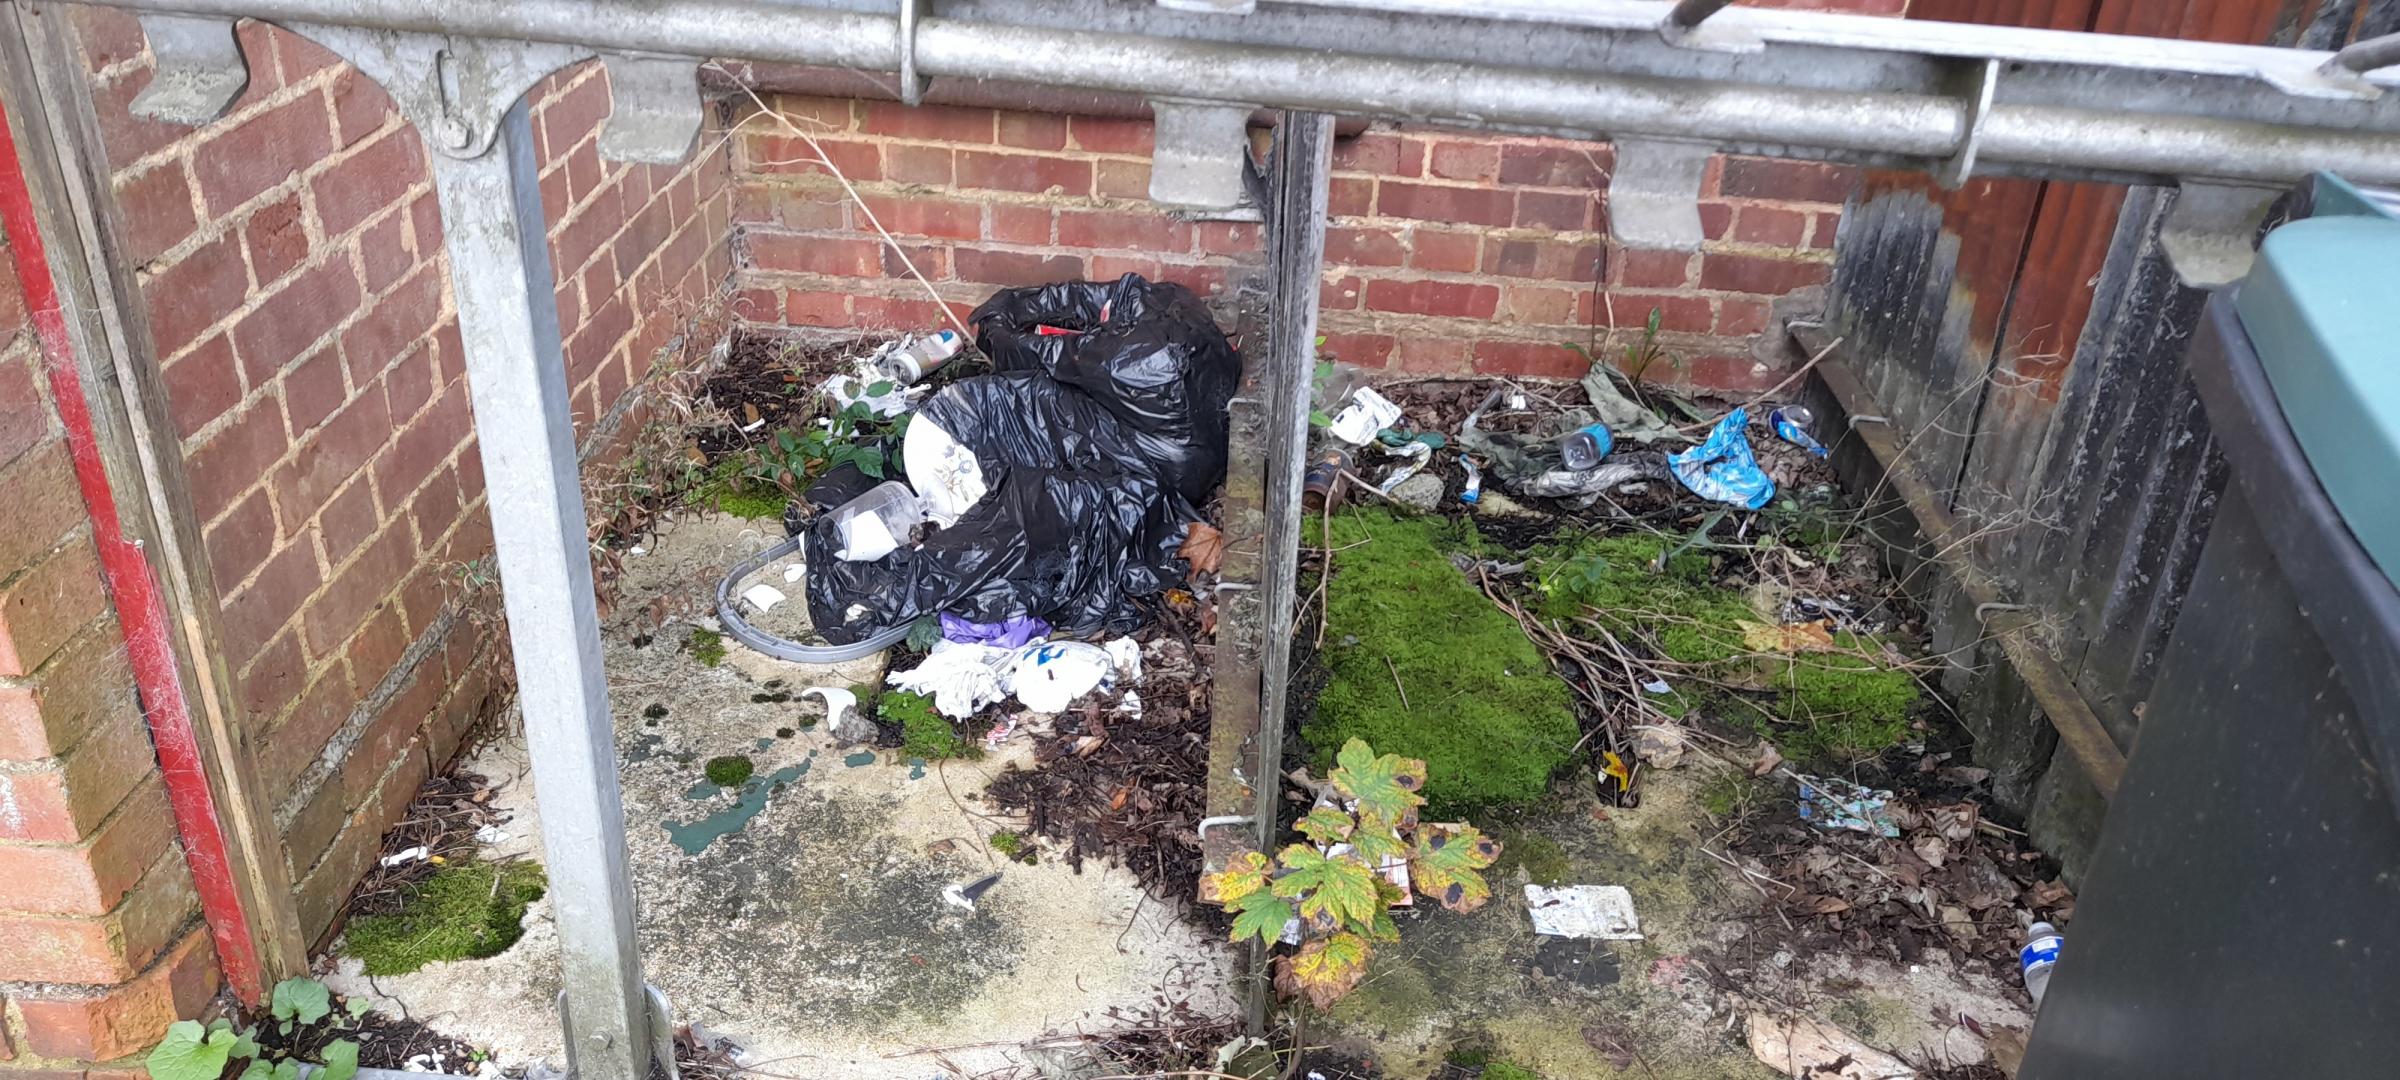 Rubbish seen by Cllr Steve Cox last Saturday